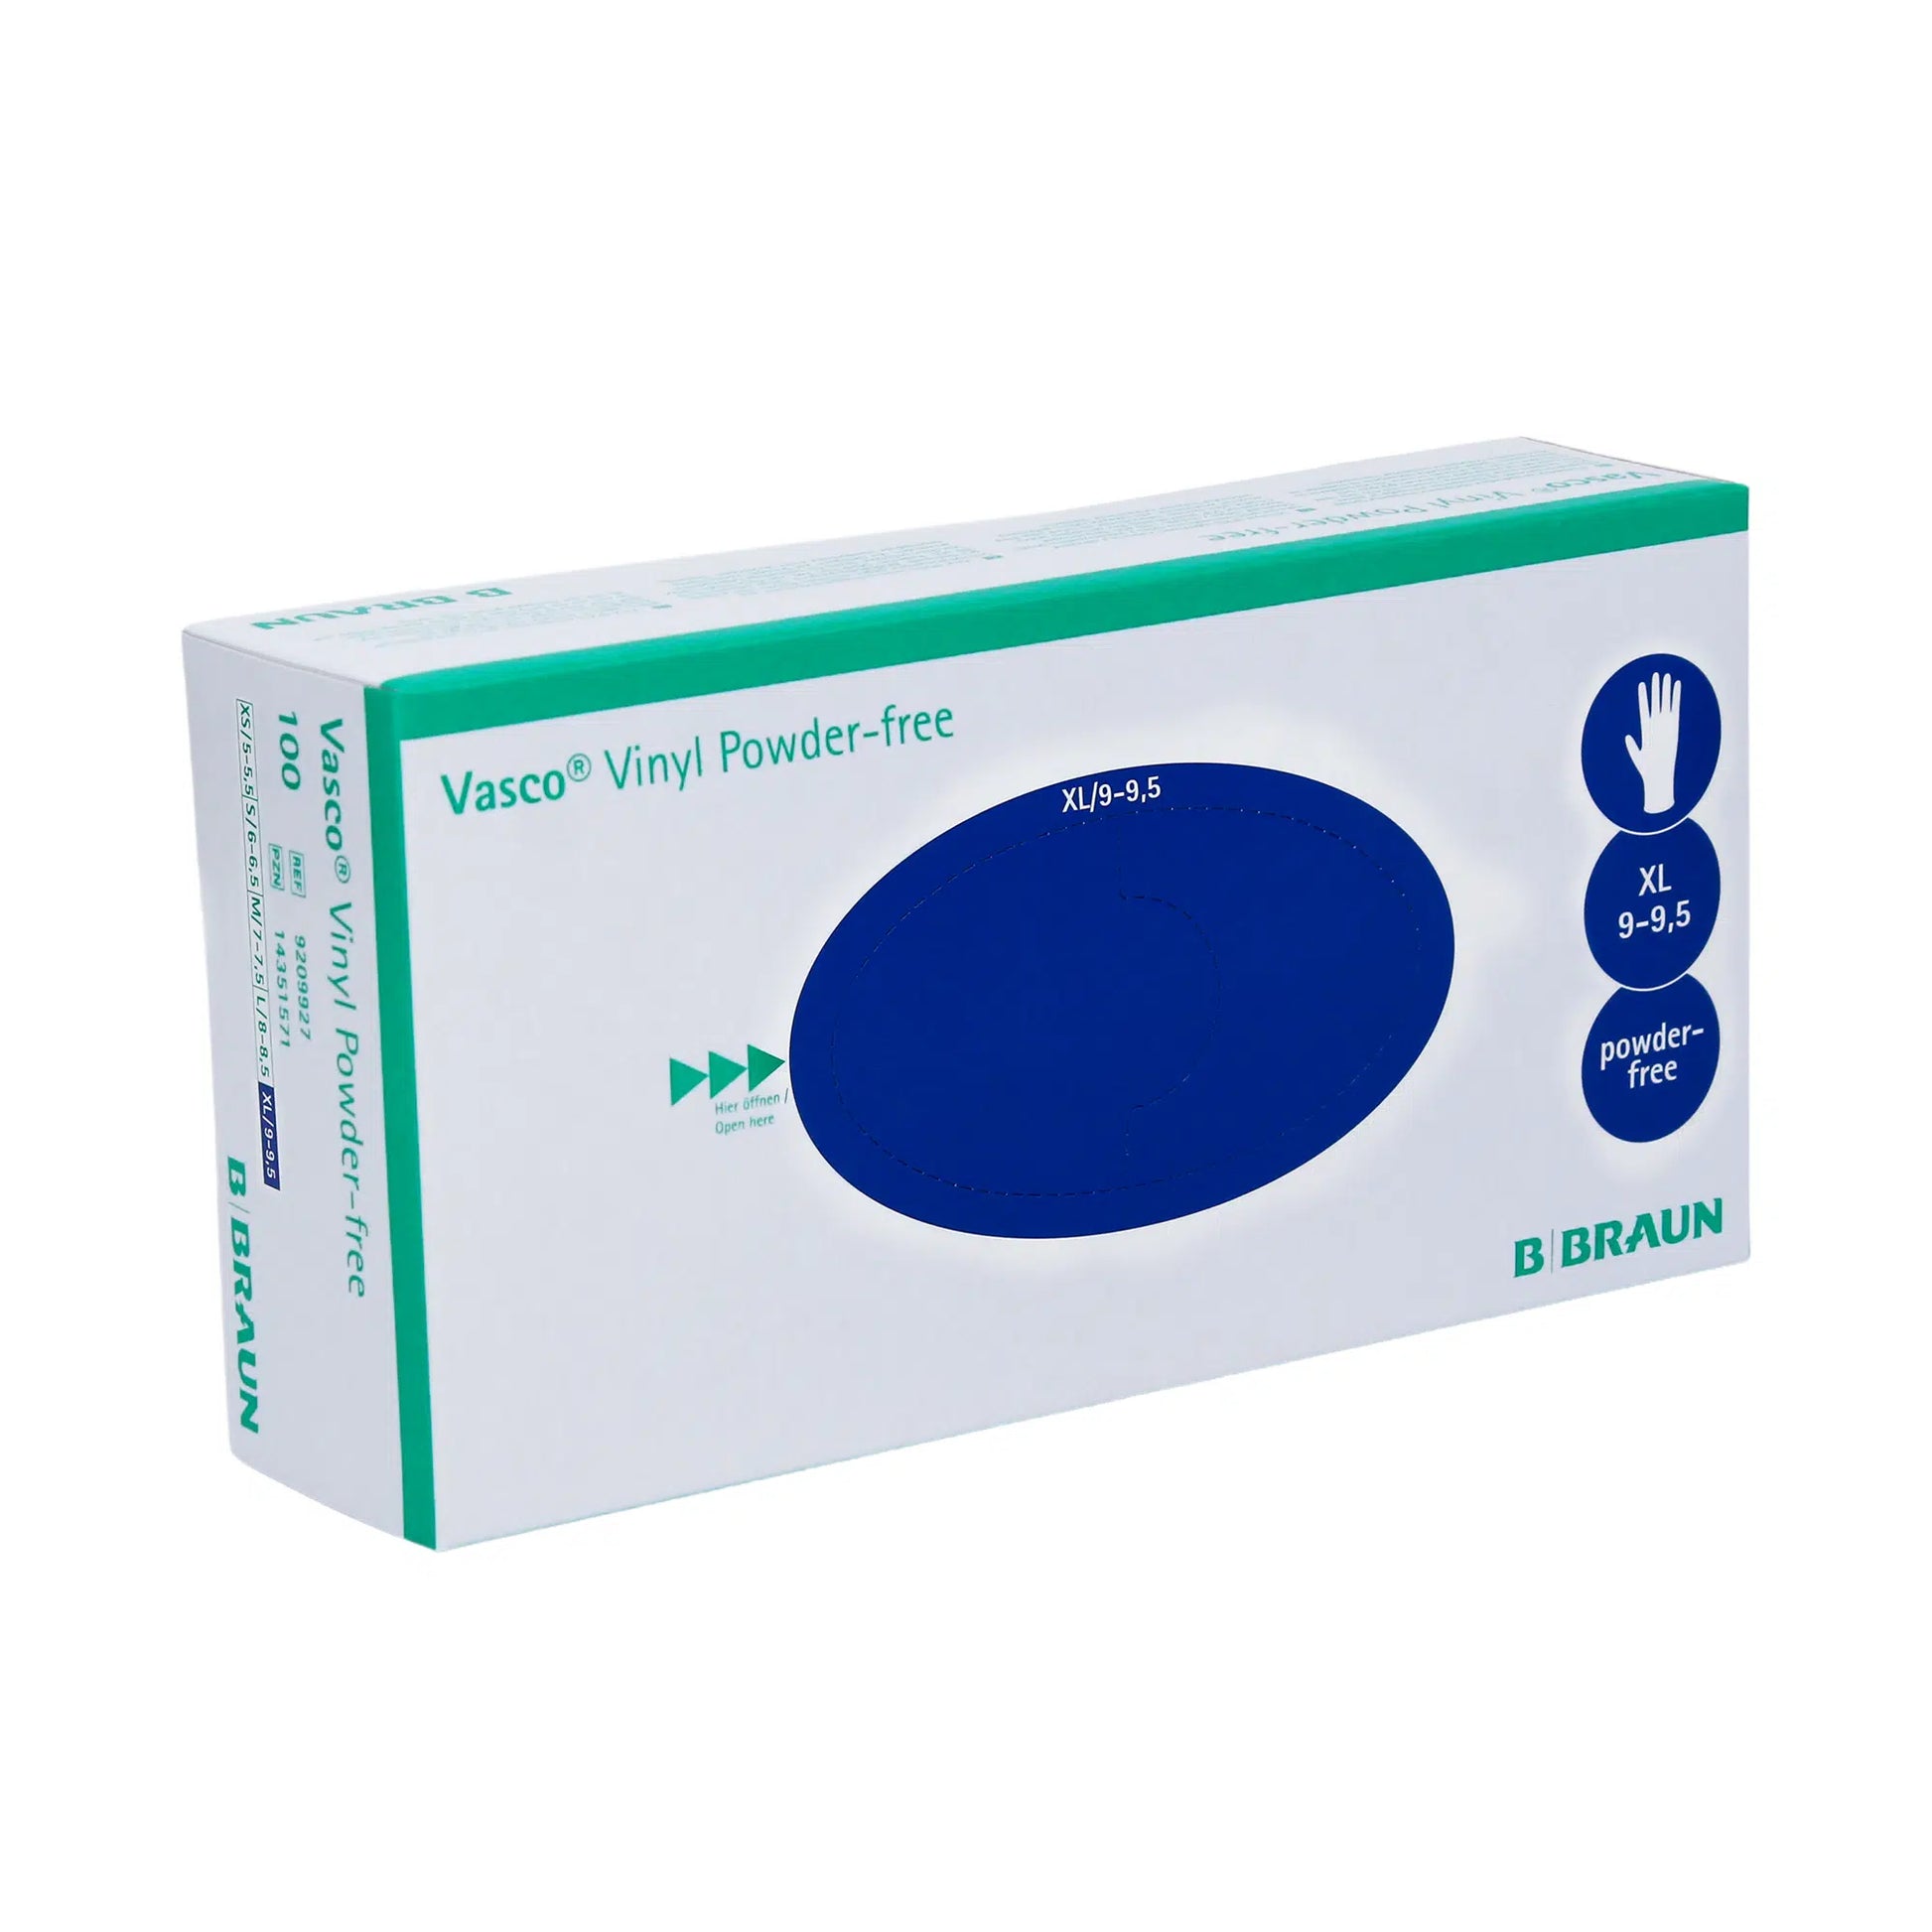 Eine Schachtel B. Braun Vasco® Vinyl Puderfreie Einmalhandschuhe in Größe XL, präsentiert auf einem einfarbigen Hintergrund. Die Schachtel ist weiß mit grünen und blauen Akzenten und enthält Markenzeichen und Produktdetails von B. Braun Melsungen AG.